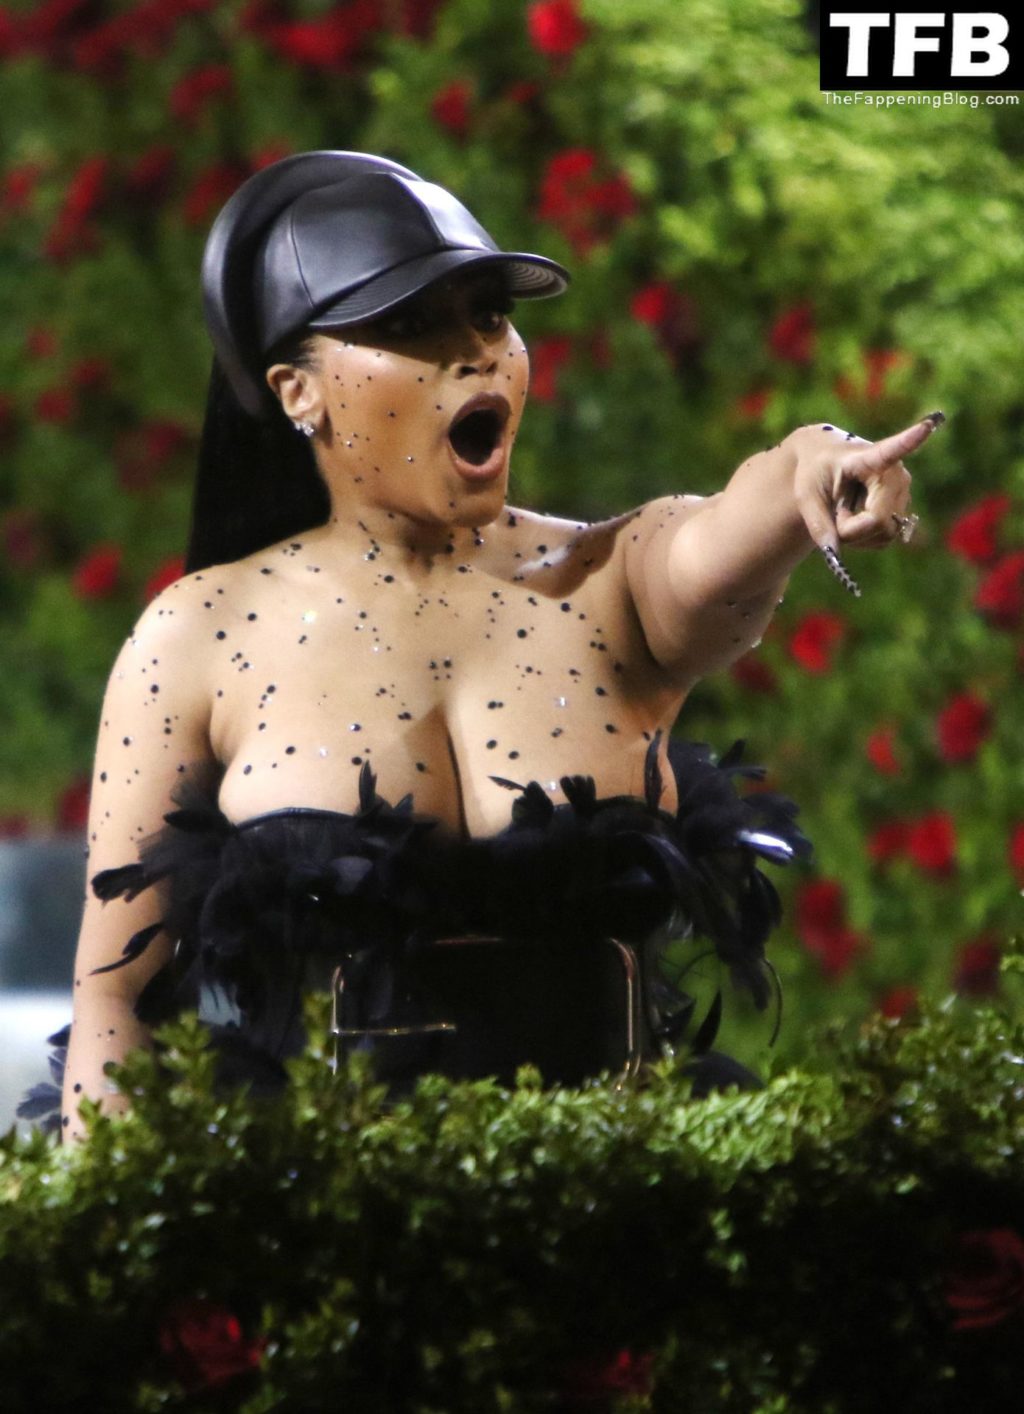 Nicki Minaj Displays Her Huge Boobs at The 2022 Met Gala in NYC (78 Photos)